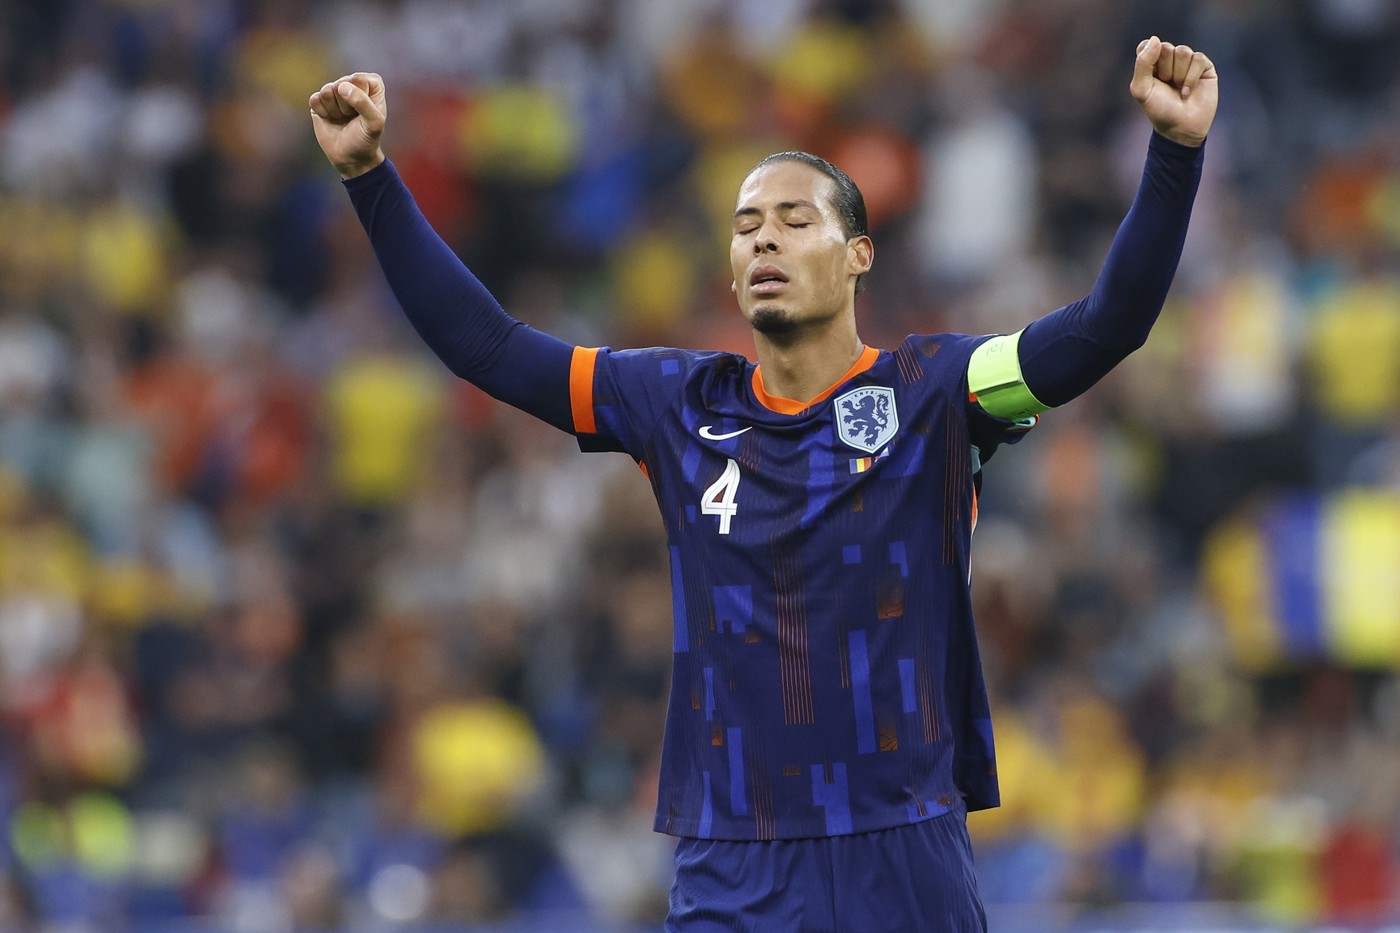 Aroganța lui Virgil van Dijk, după România - Olanda 0-3: ”Trebuia să înscriem mai multe goluri!”